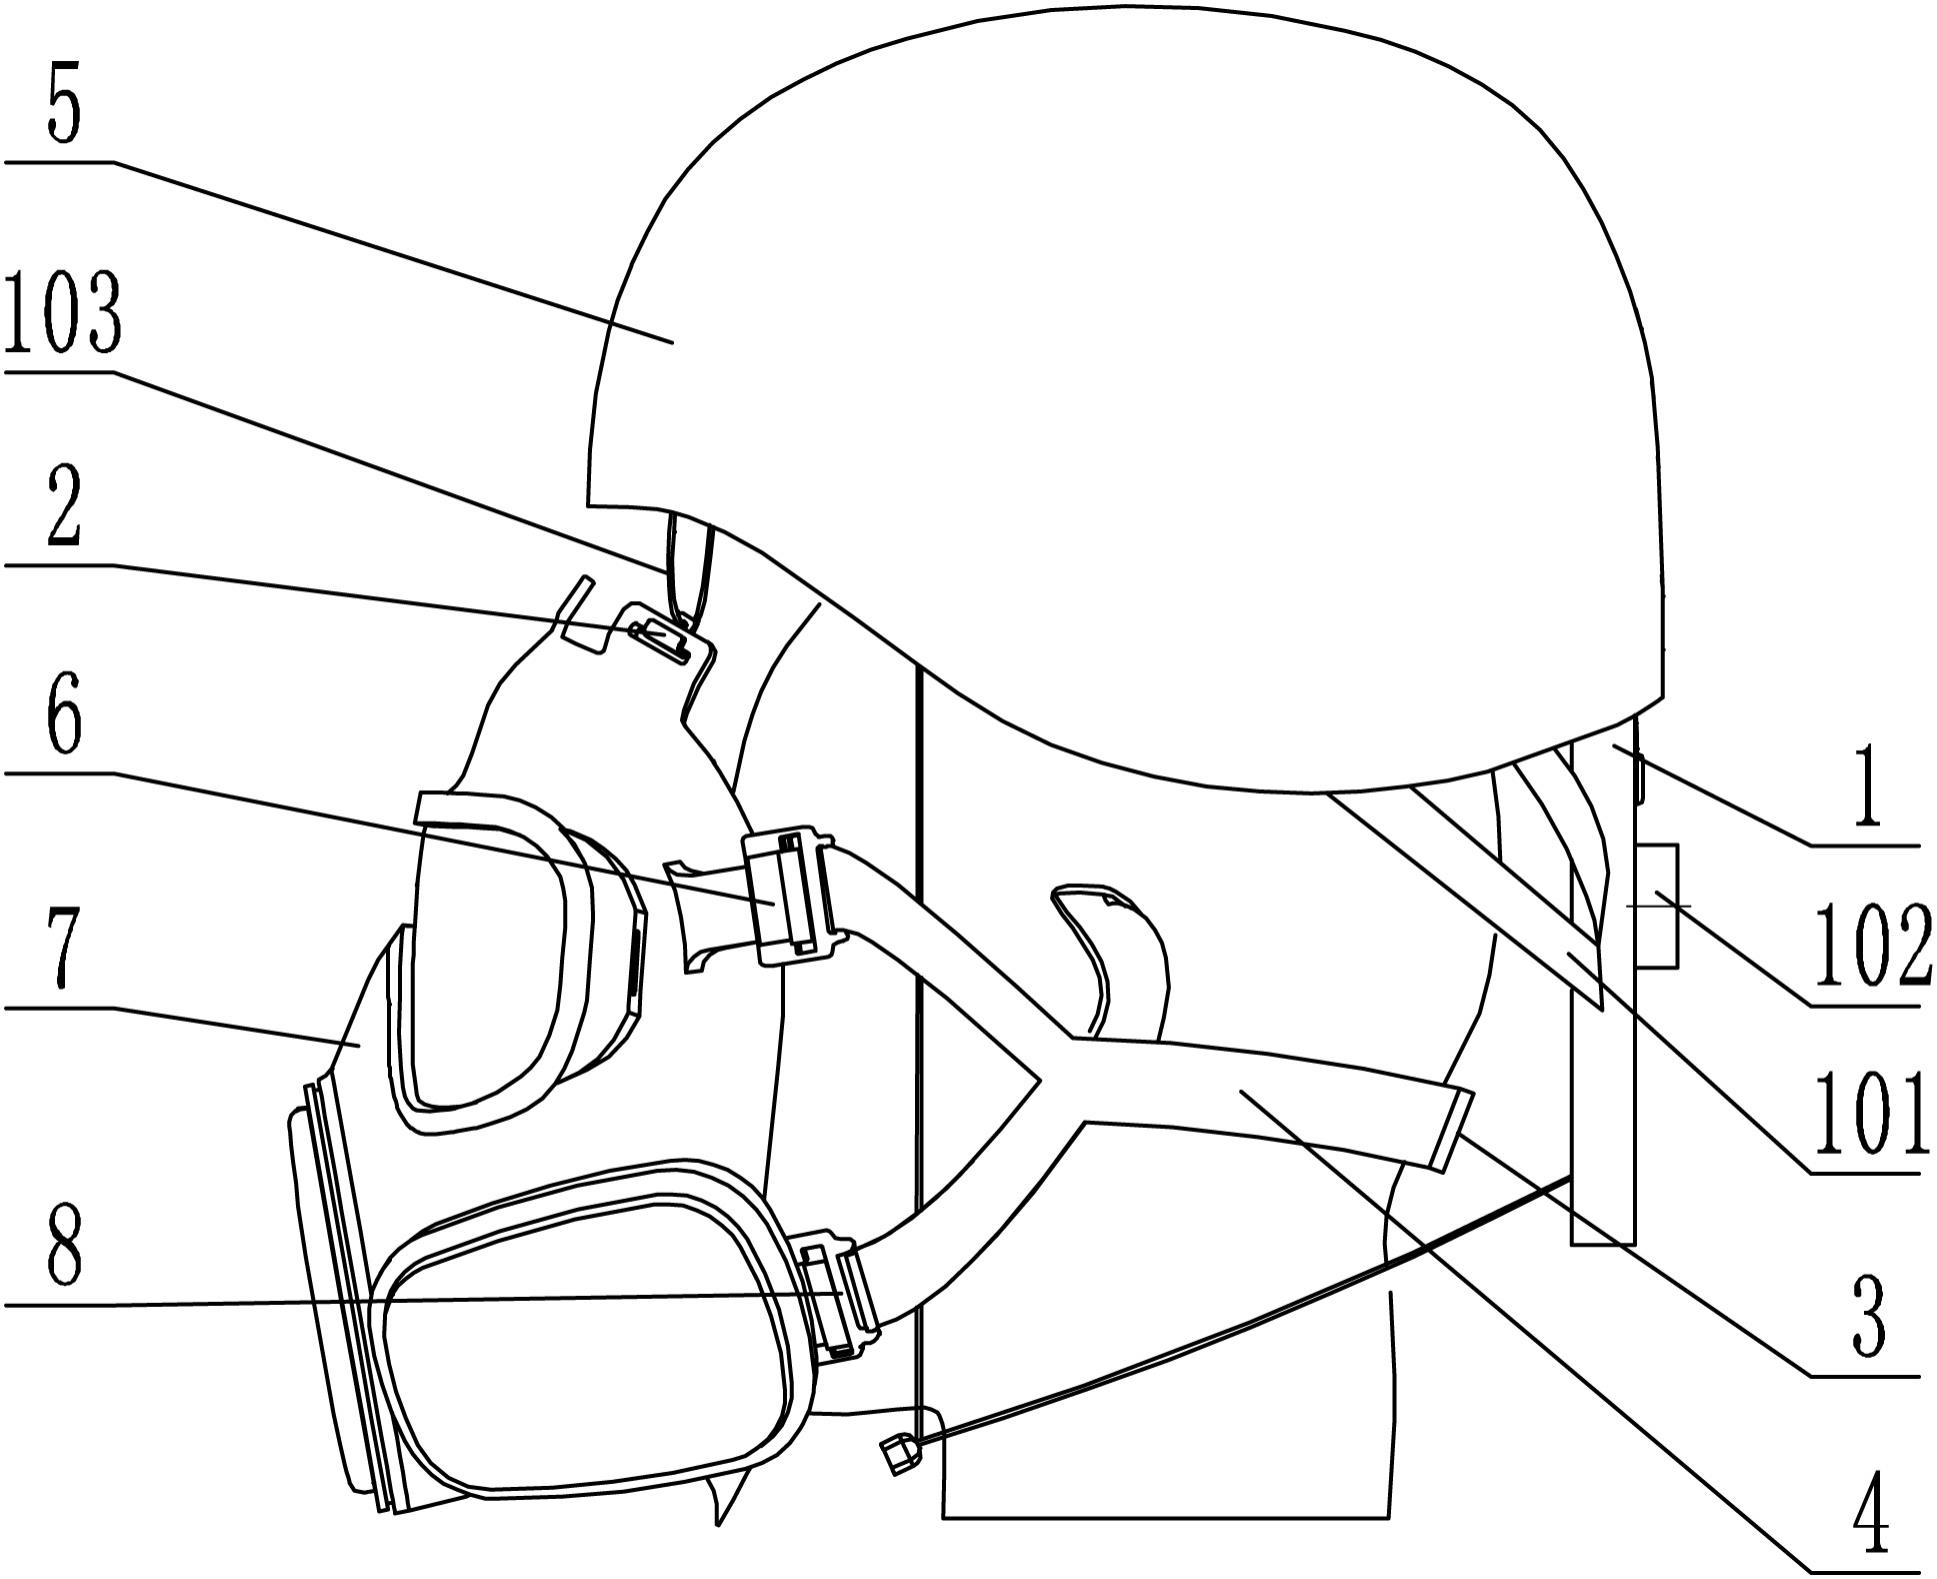 一种基于悬挂系统式的面具与头盔连接结构及方法与流程